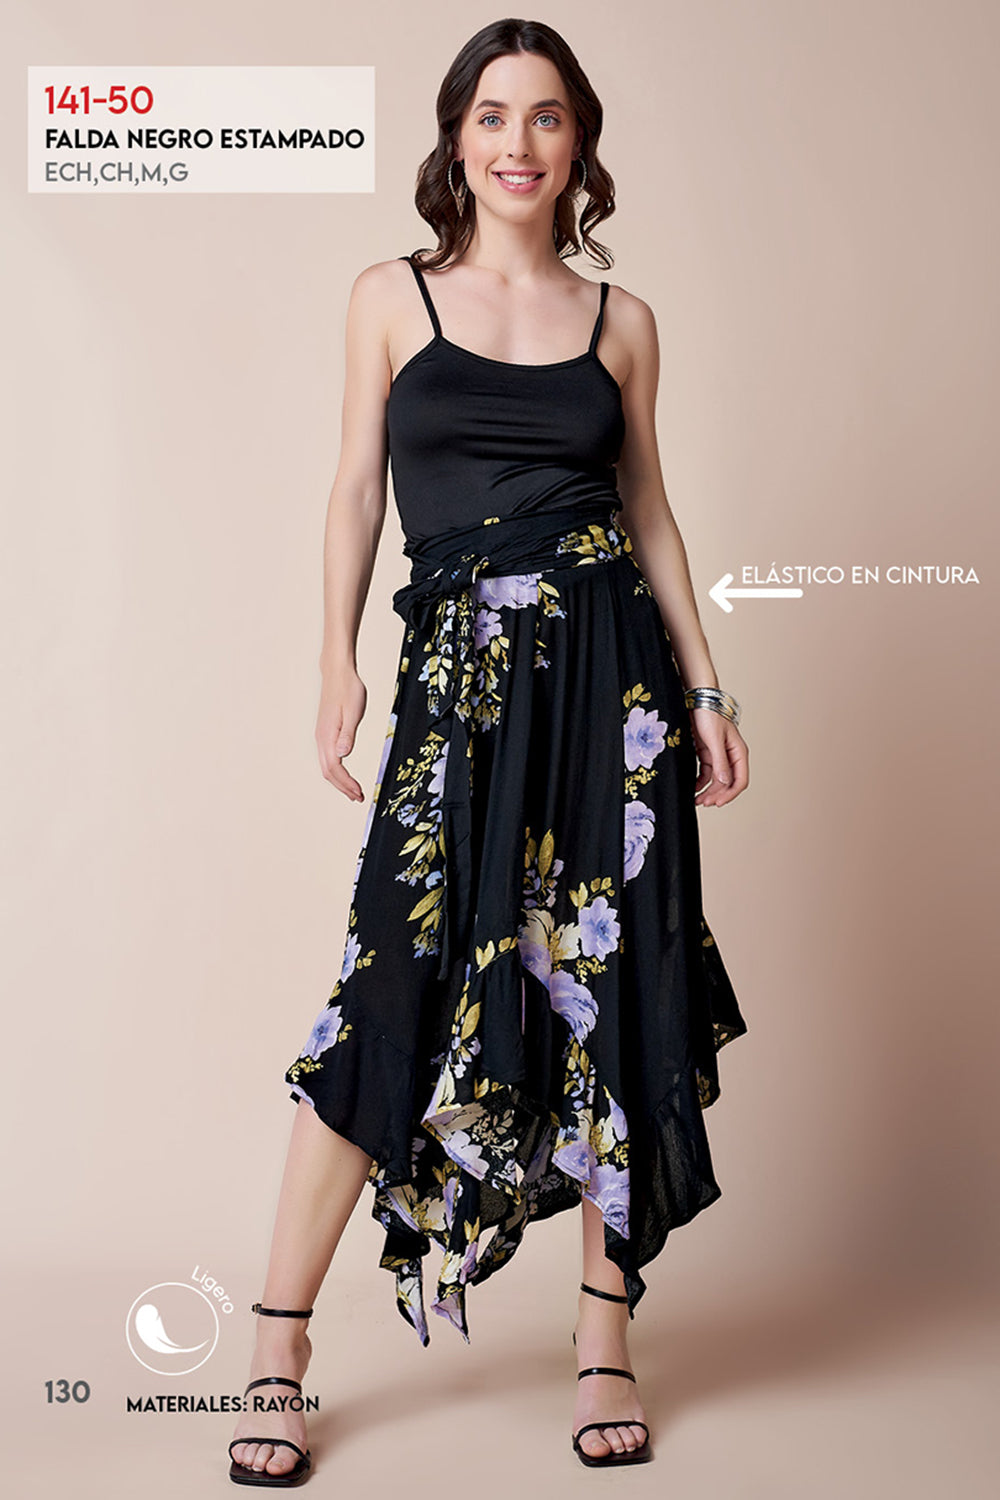 Falda Negra Asimétrica: Estampado Floral, Tiro Alto